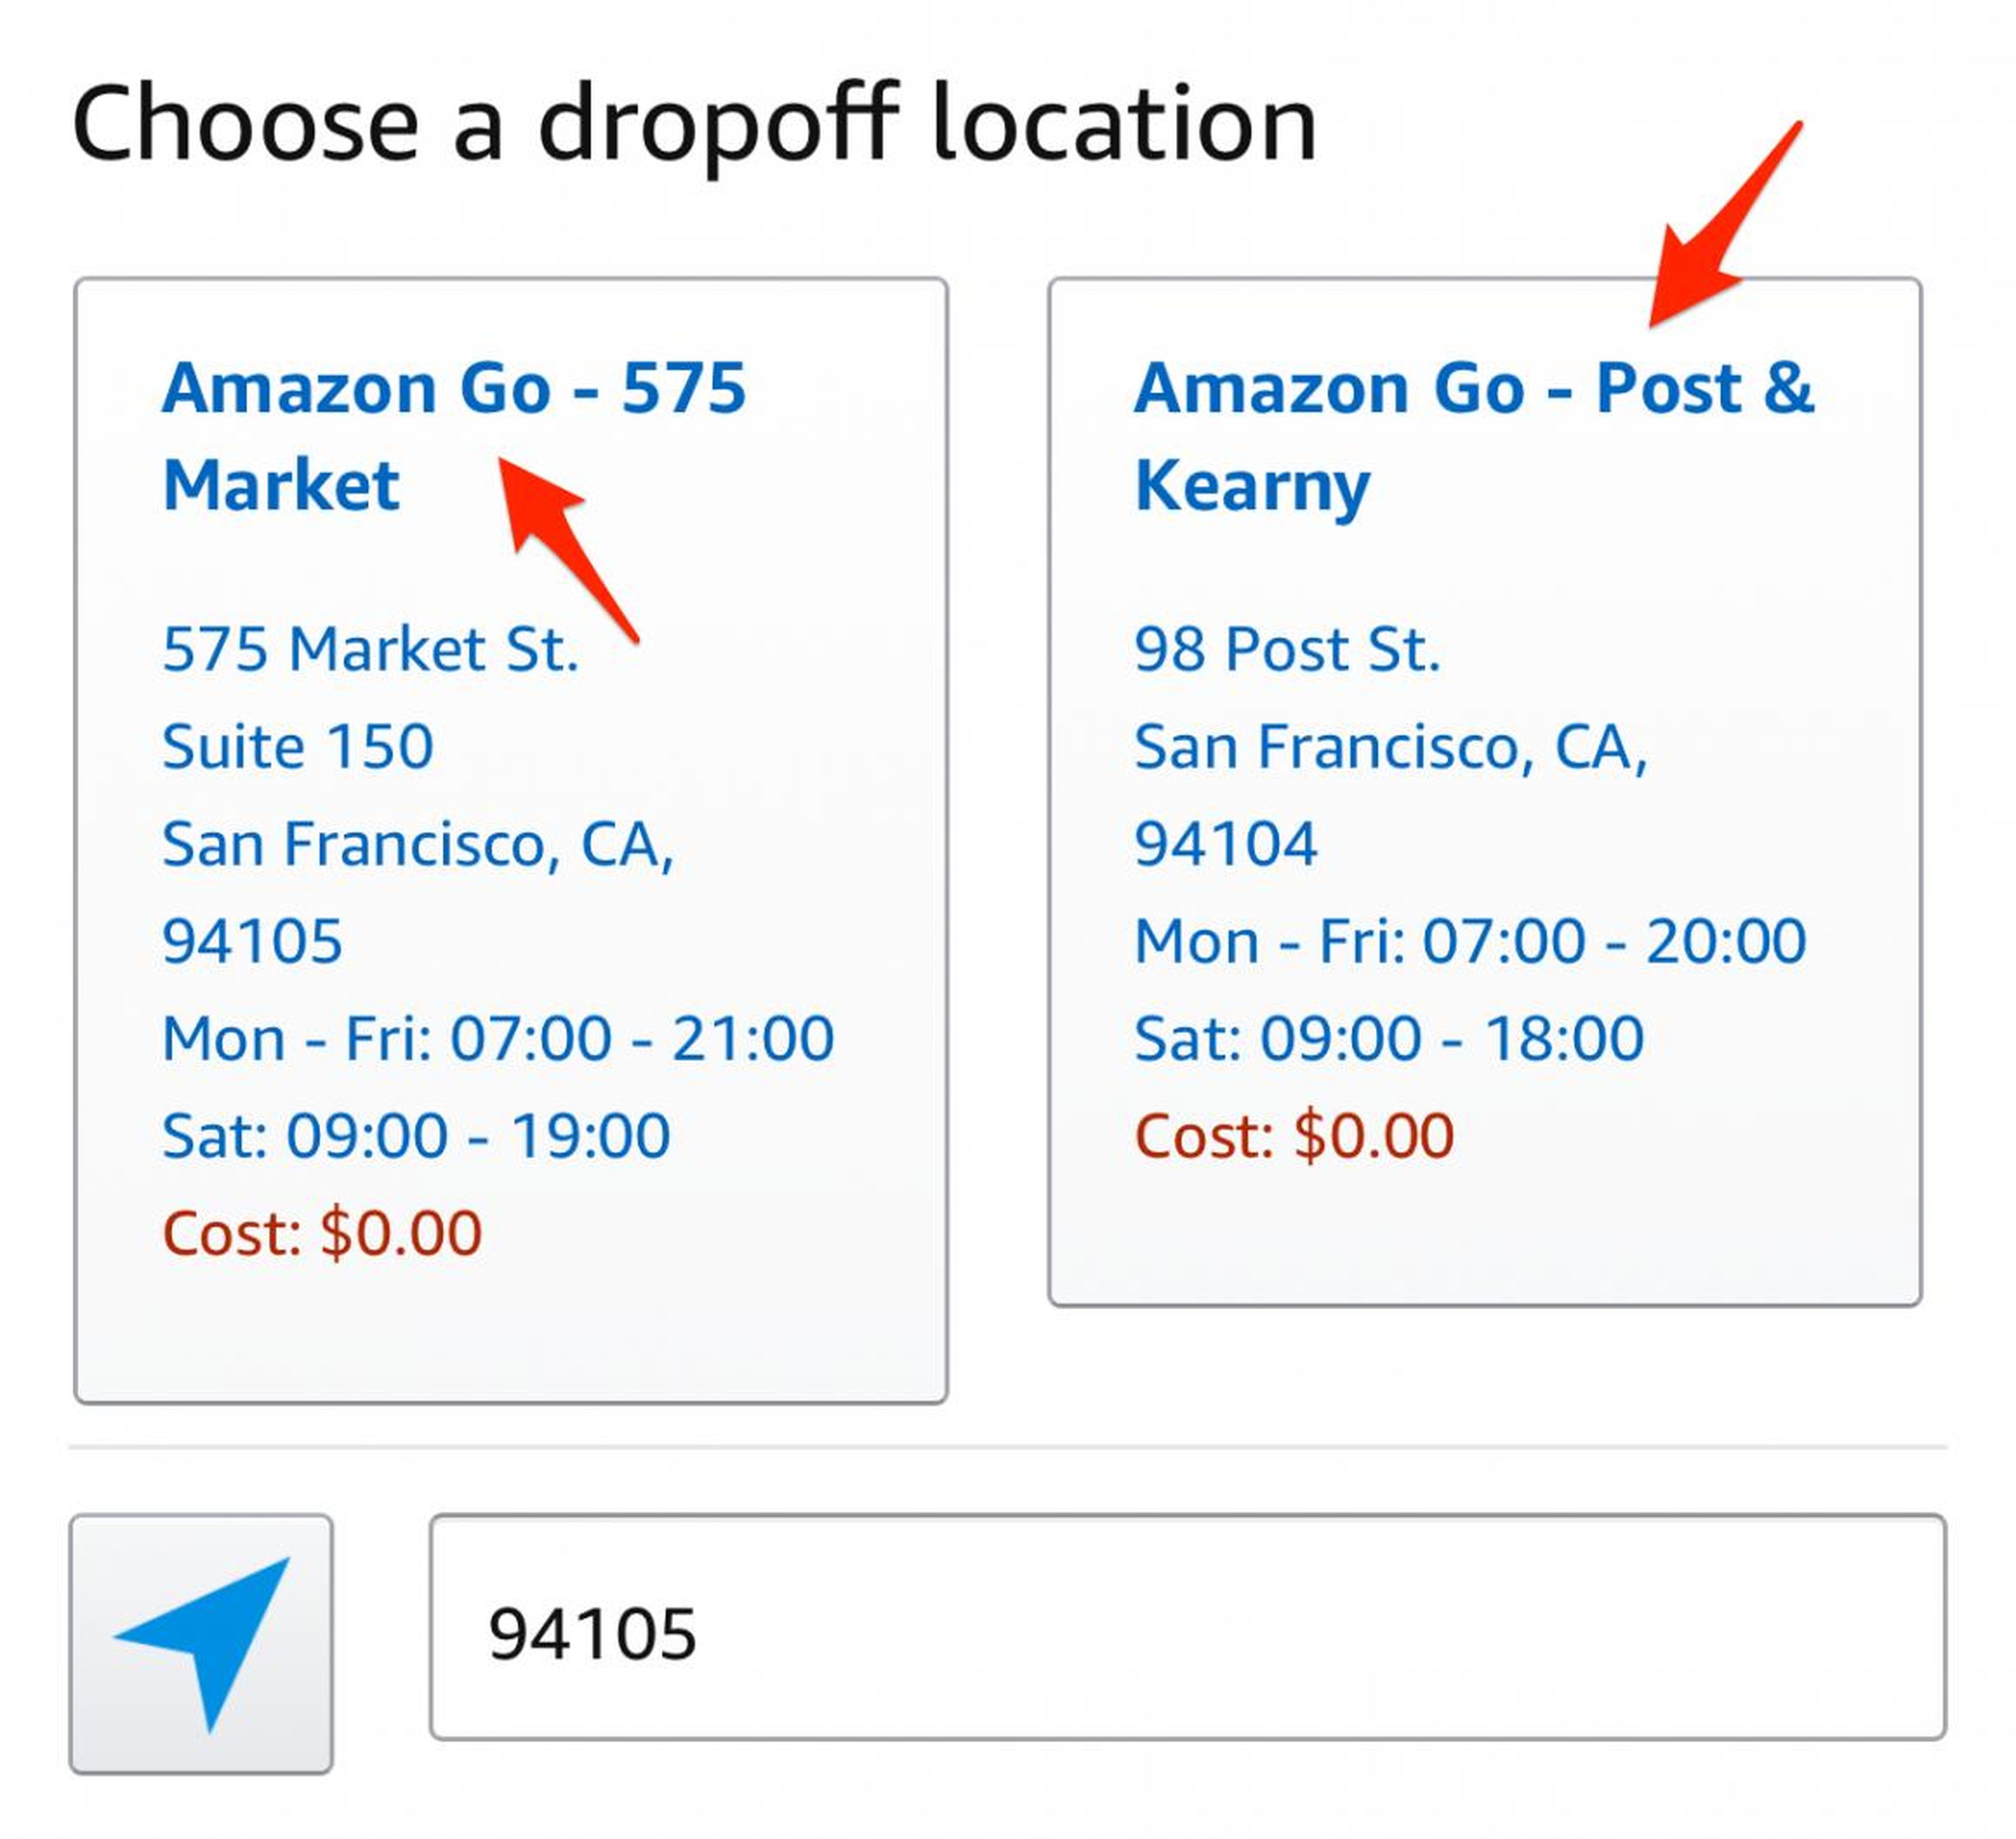 Los clientes pueden devolver los productos comprados en Amazon.com en una tienda Amazon Go.